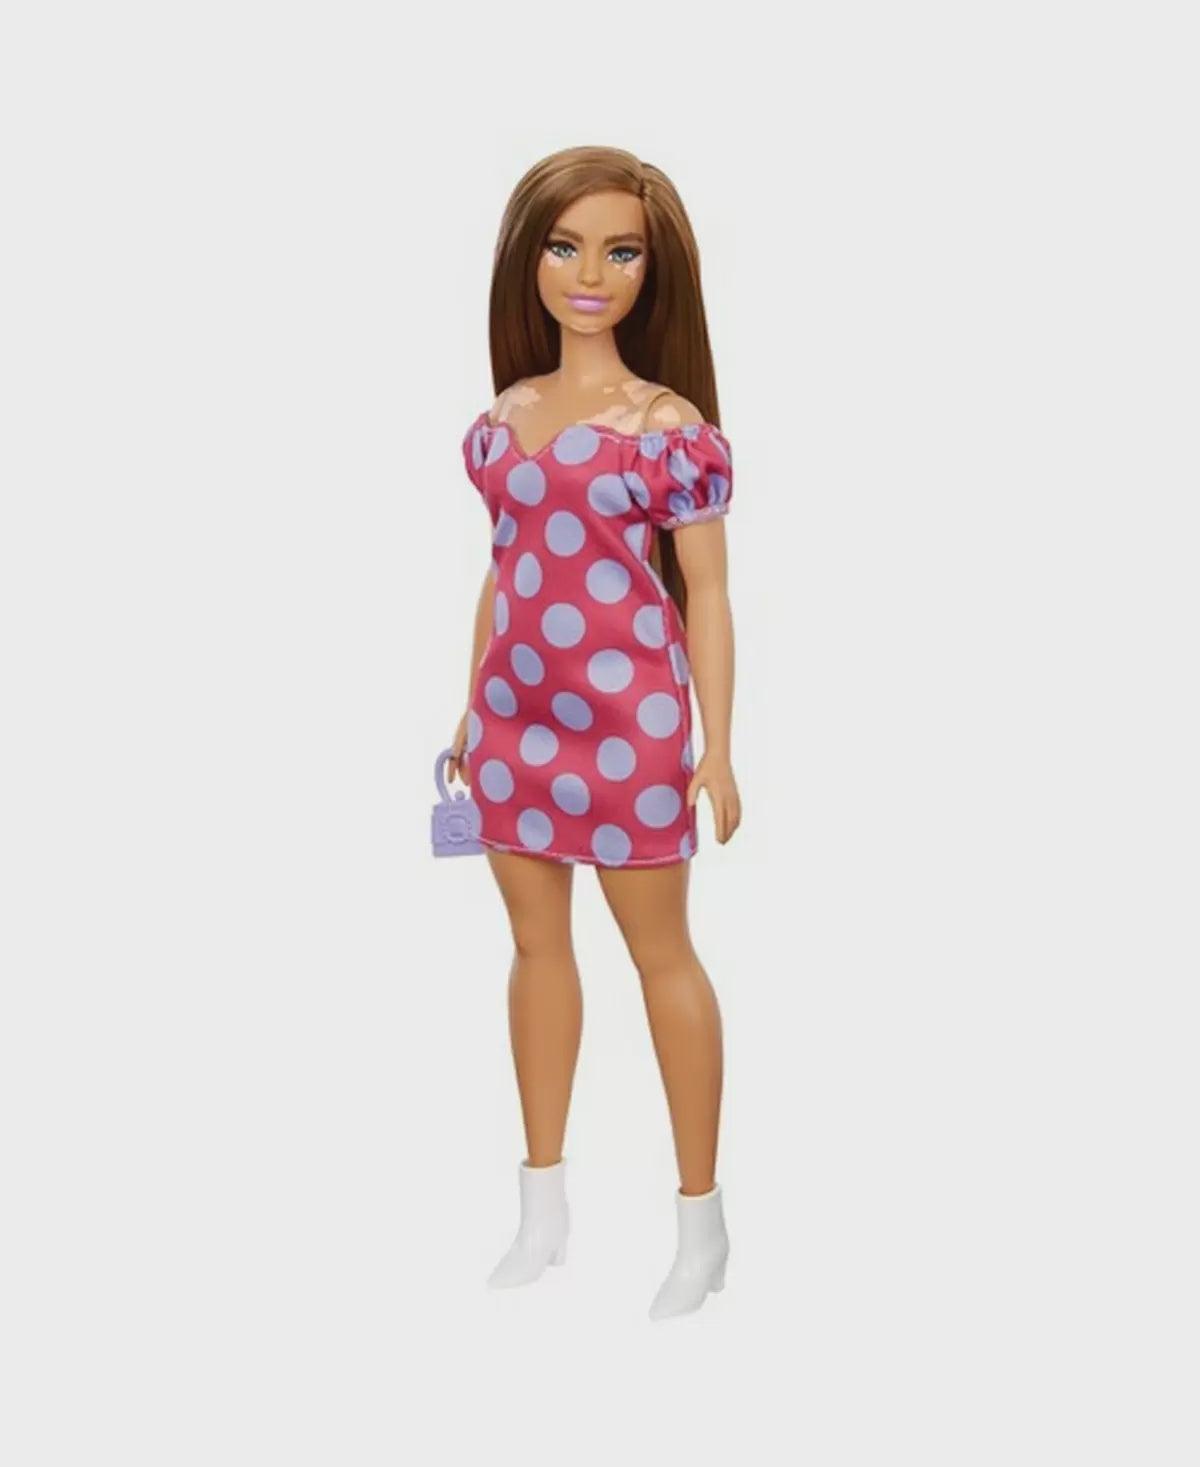 Barbie Fashionistas Doll # 171, w/Polka Dot Dress